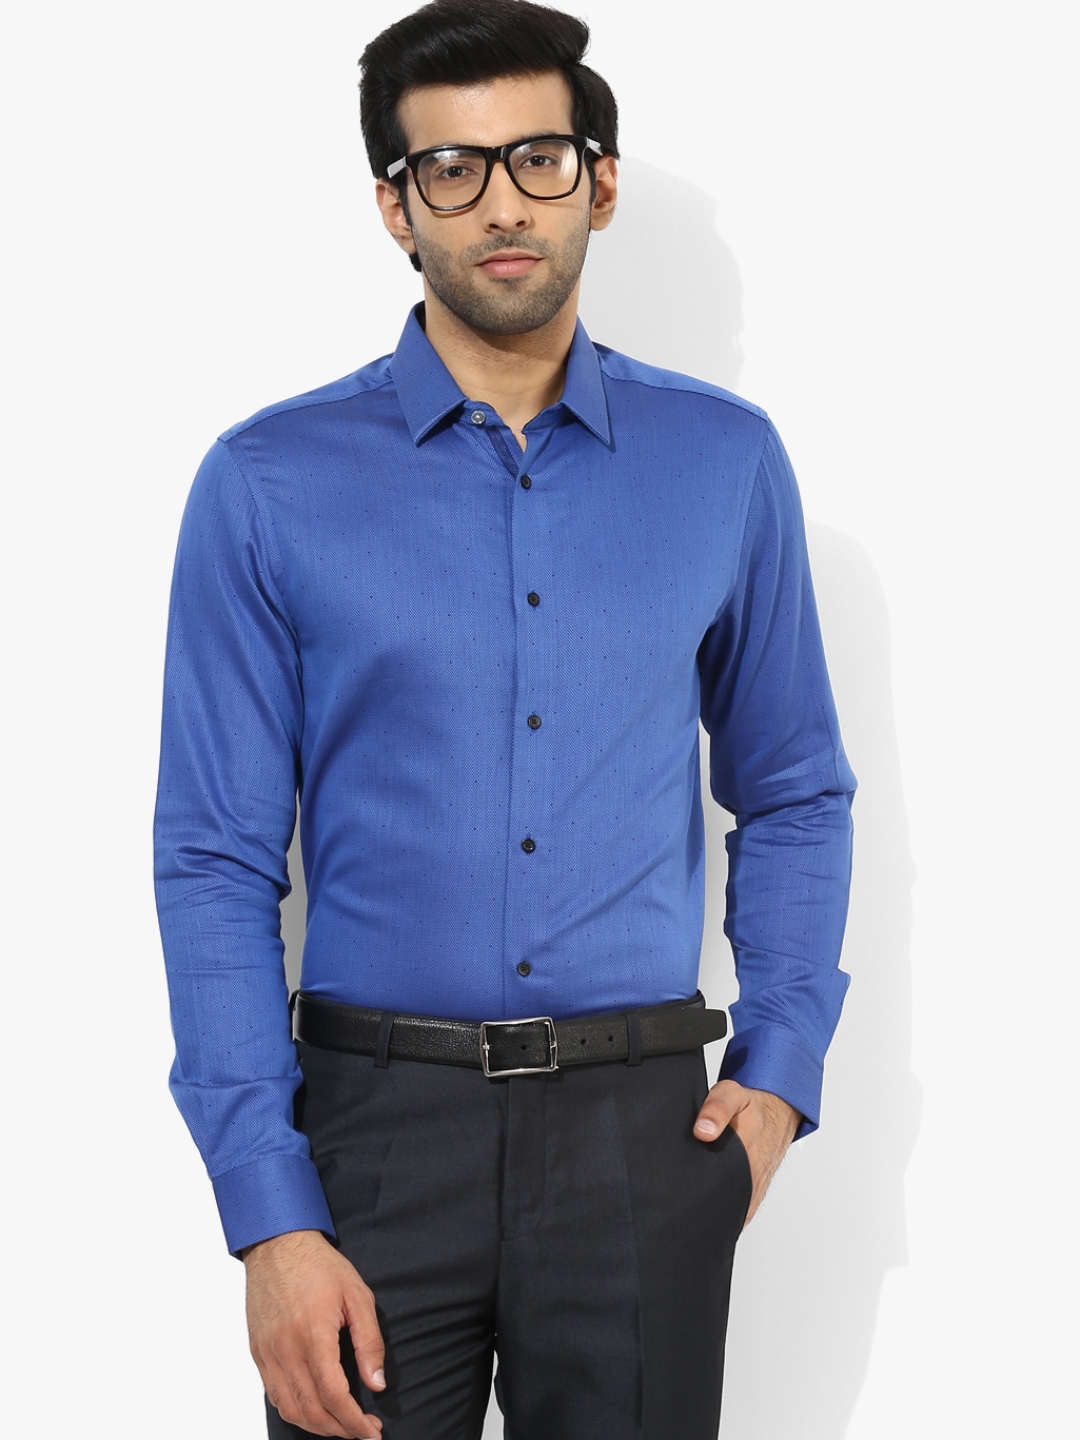 Buy Navy Blue Self Design Slim Fit Formal Shirt - Shirts for Men ...